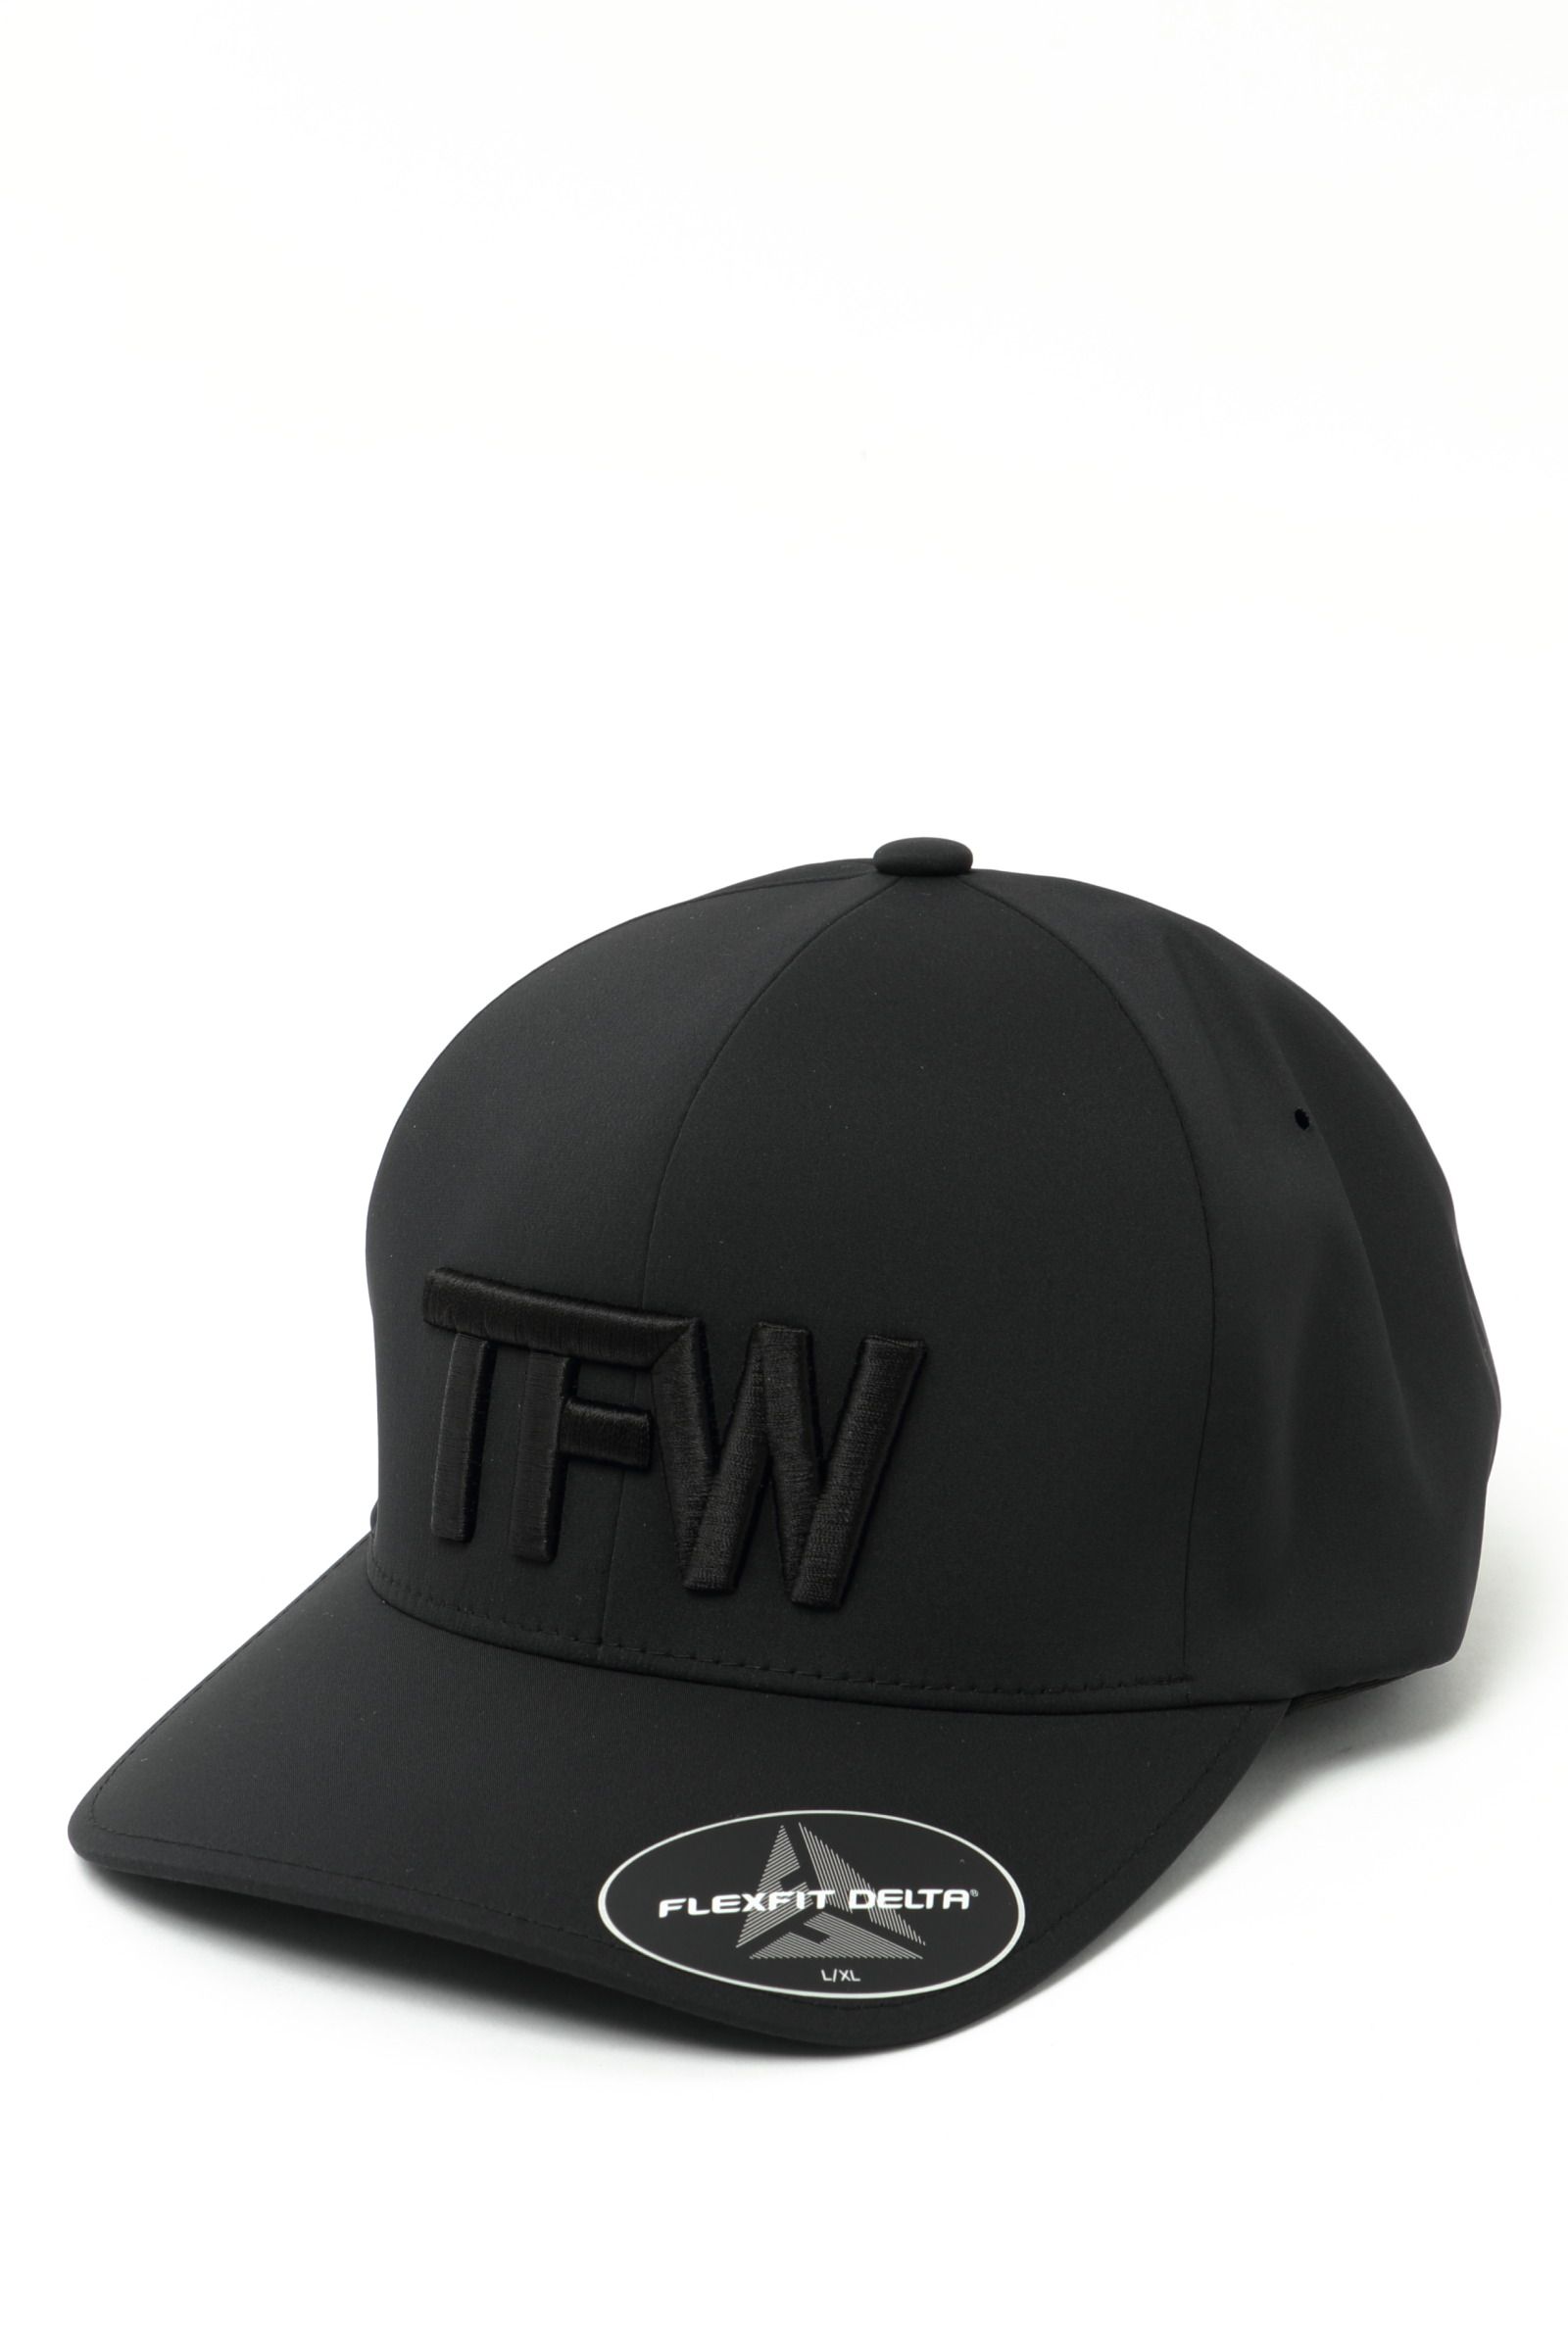 TFW49 - ポリエステル 防臭 防菌 キャップ PANEL CAP / ホワイト 